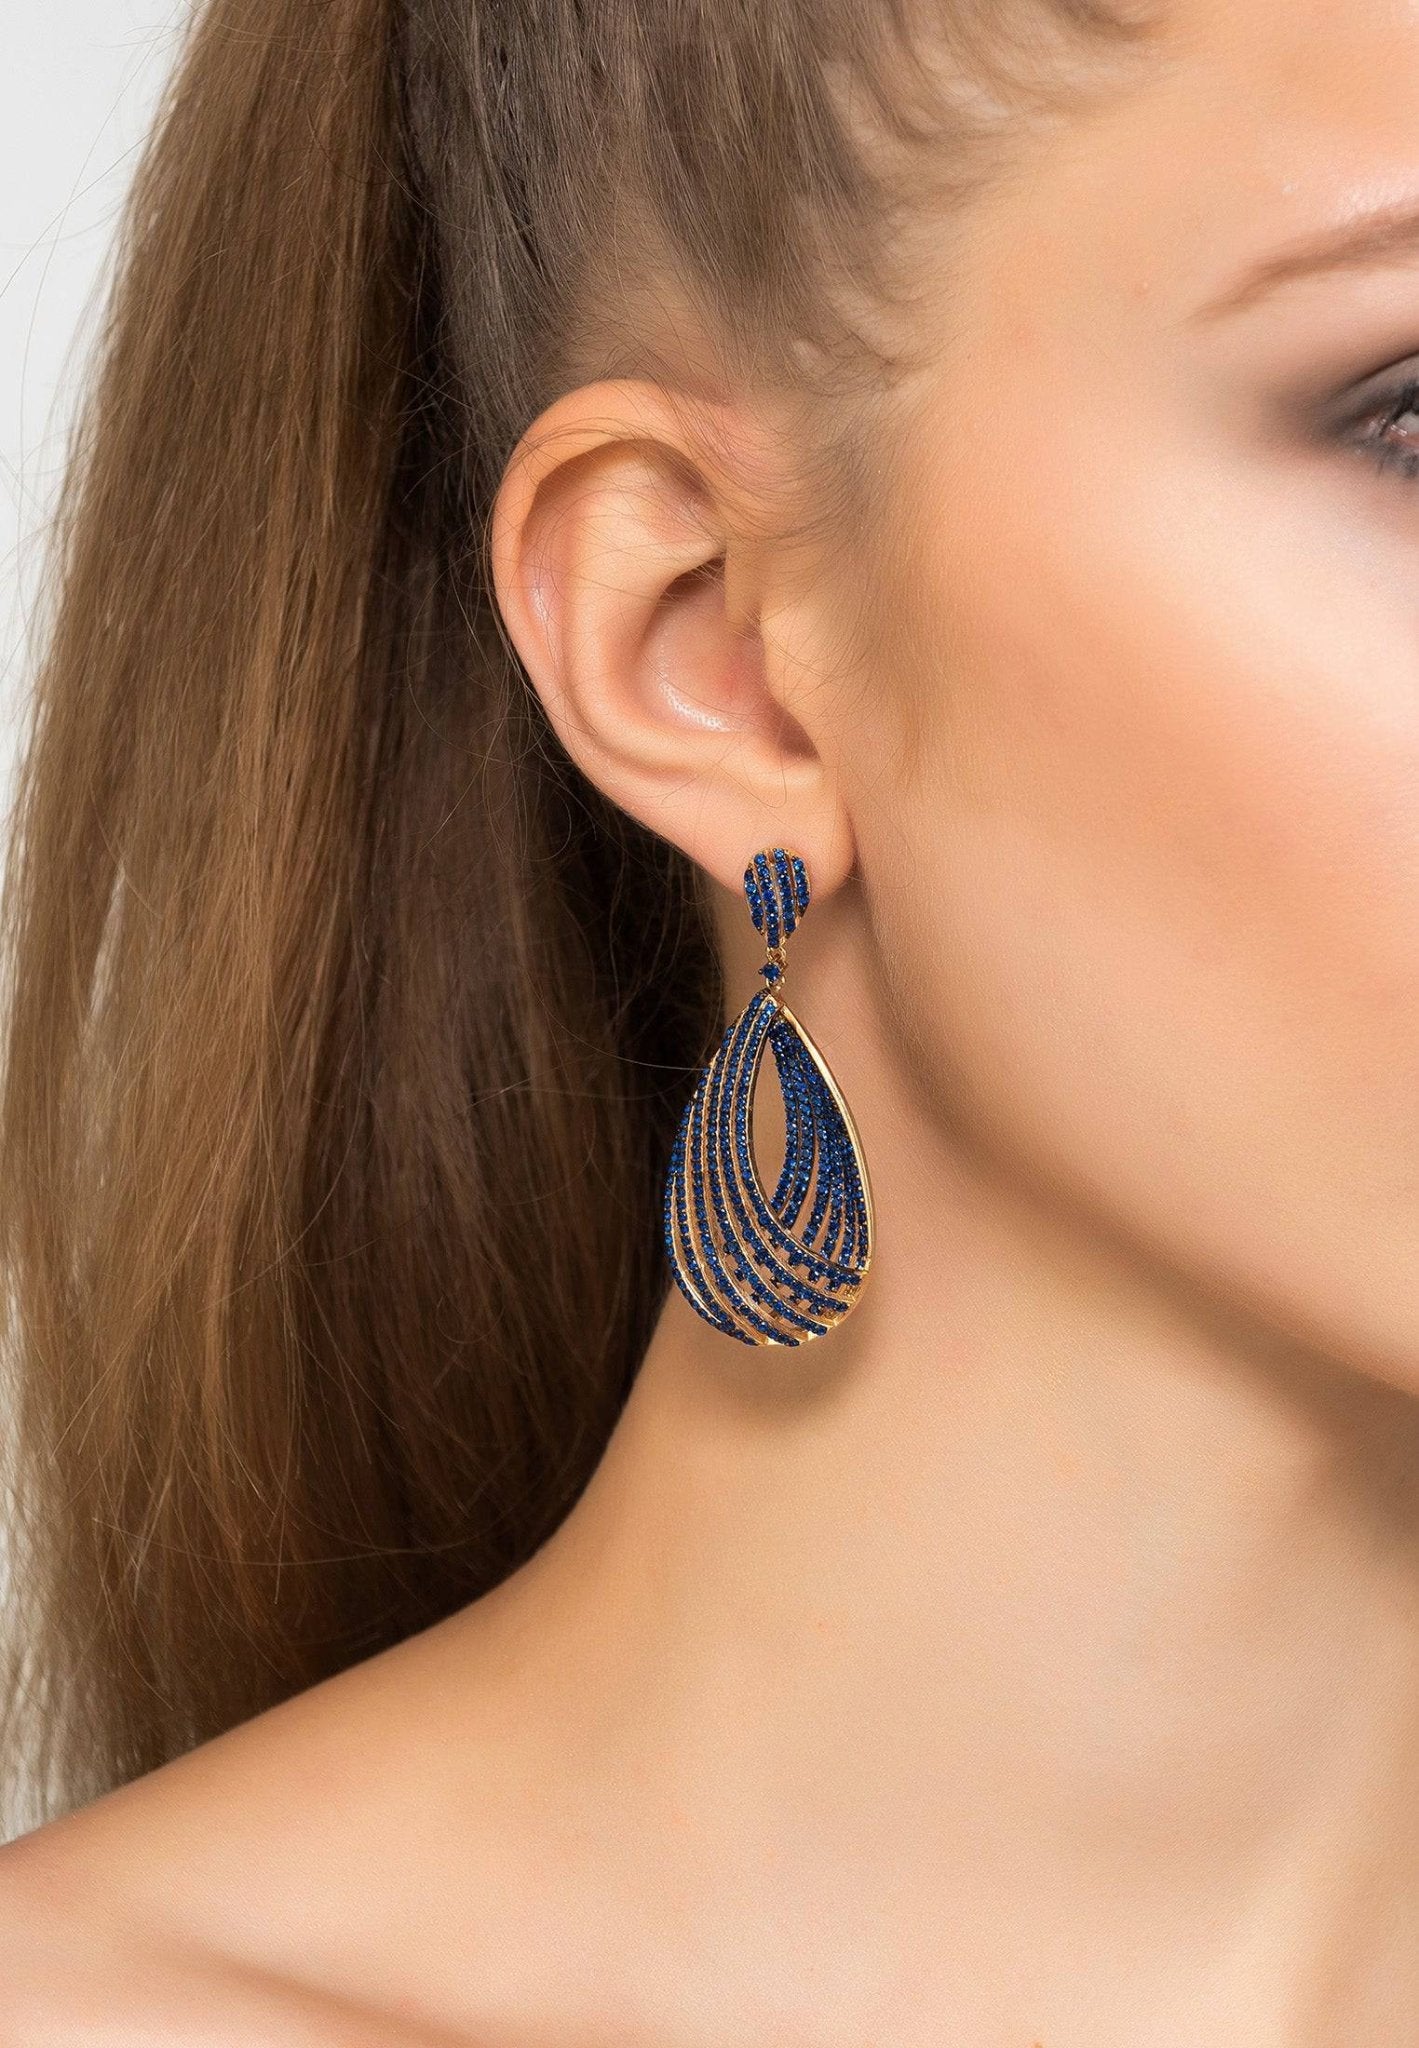 Vortex Teardrop Earring Sapphire Blue Cz Gold - LATELITA Earrings